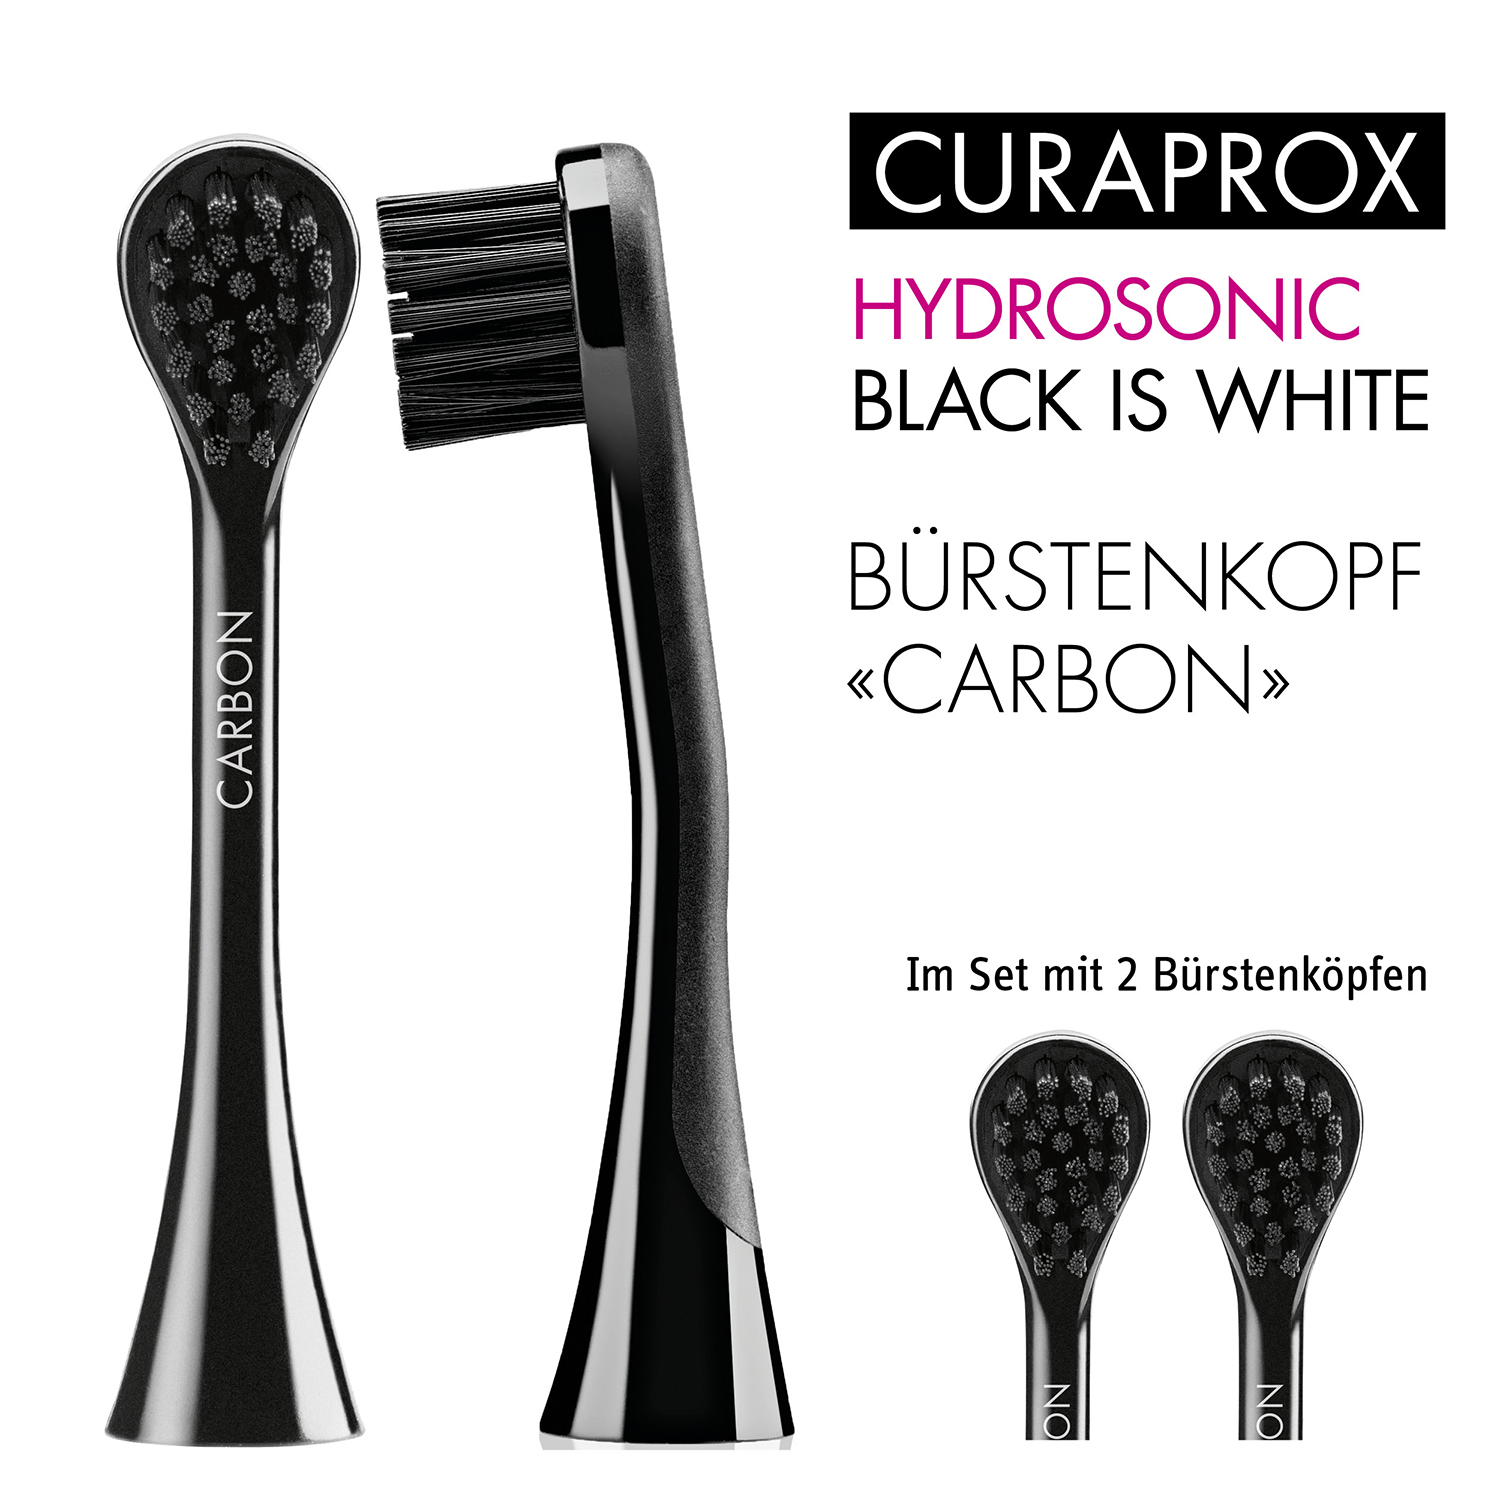 CURAPROX Hydrosonic Black White Aufsteckbürsten is Carbon